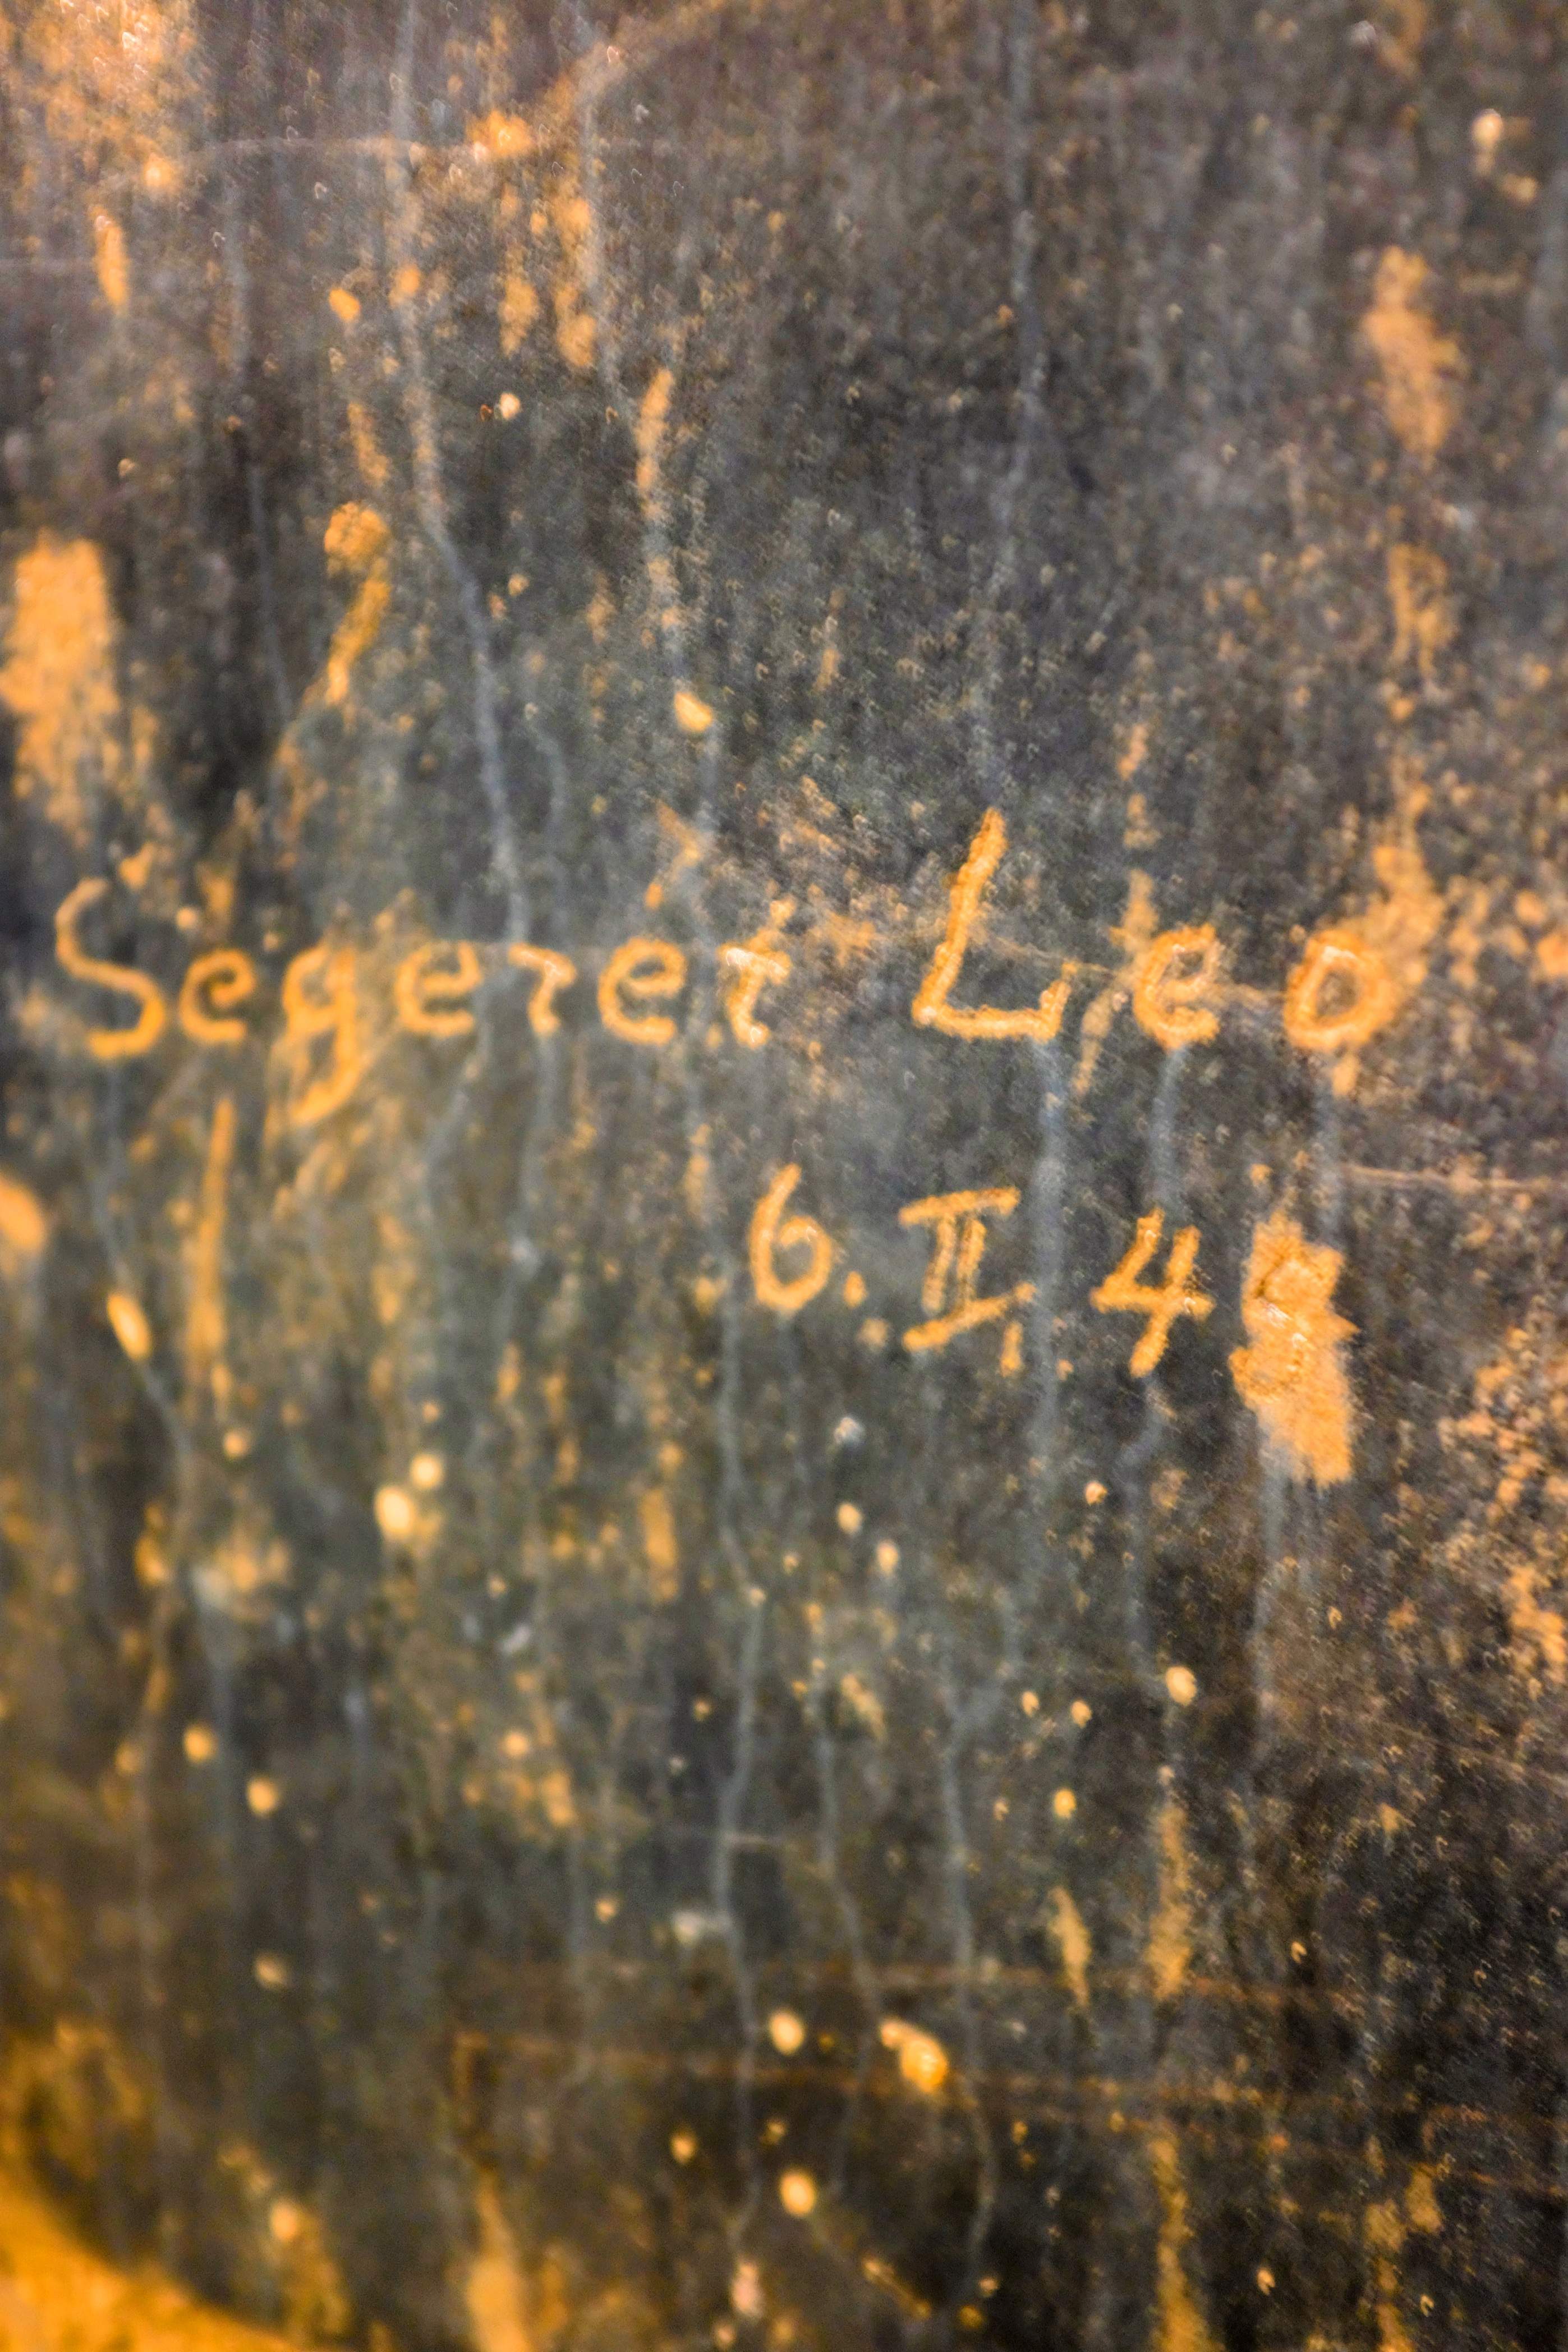 Quì il 6 febbraio del 1945, il soldato Segeret Leo ha scritto il suo nome sulla parete del bunker.